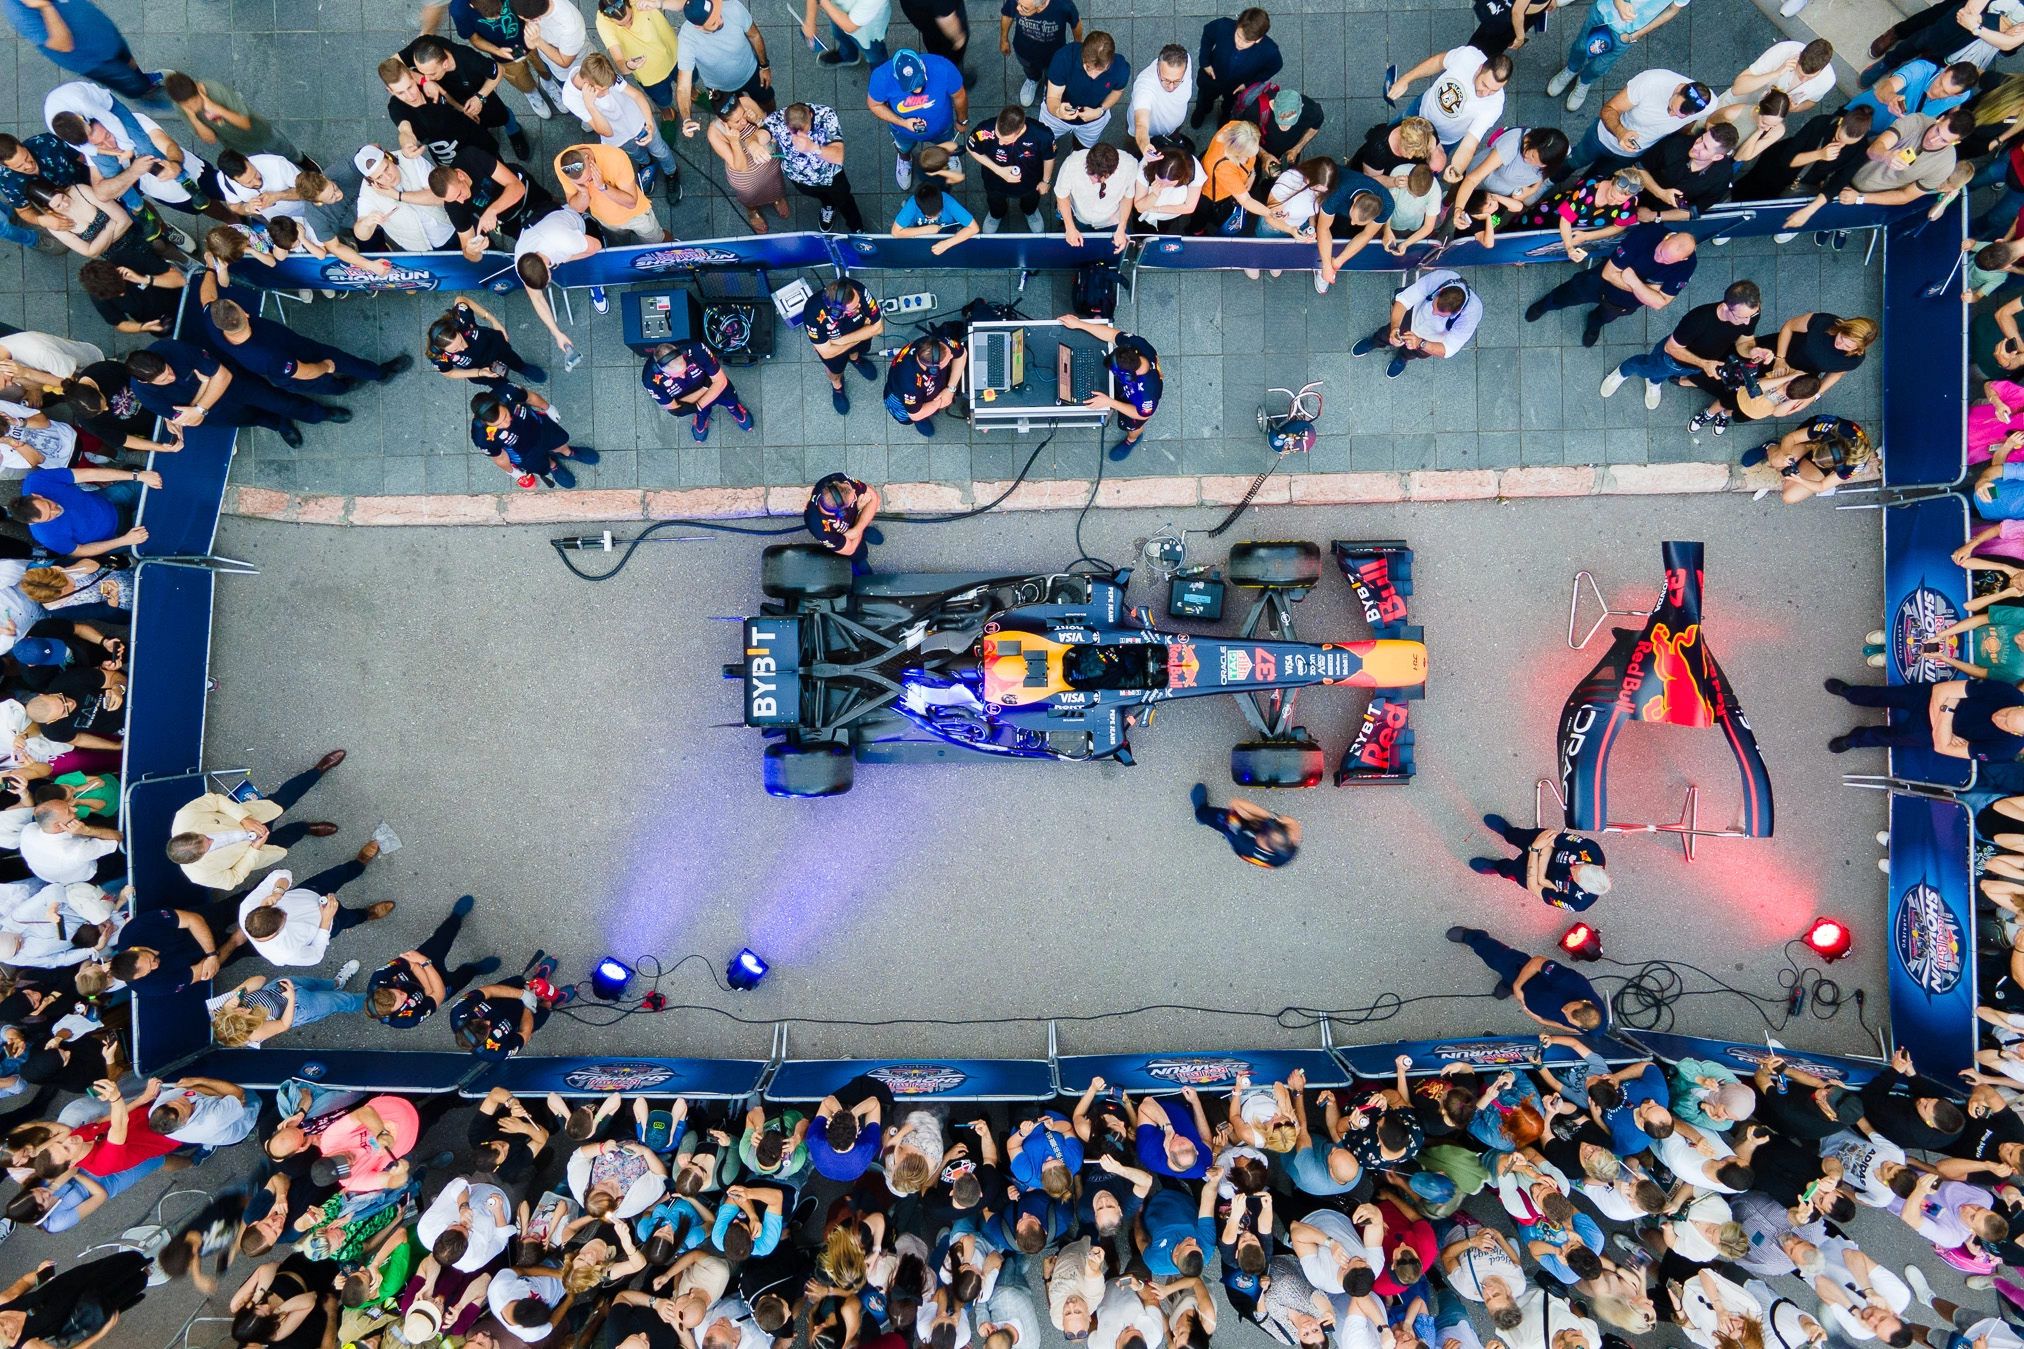 Zvuk F1 bolida odjekivao centrom Sarajeva uoči Red Bull Showruna